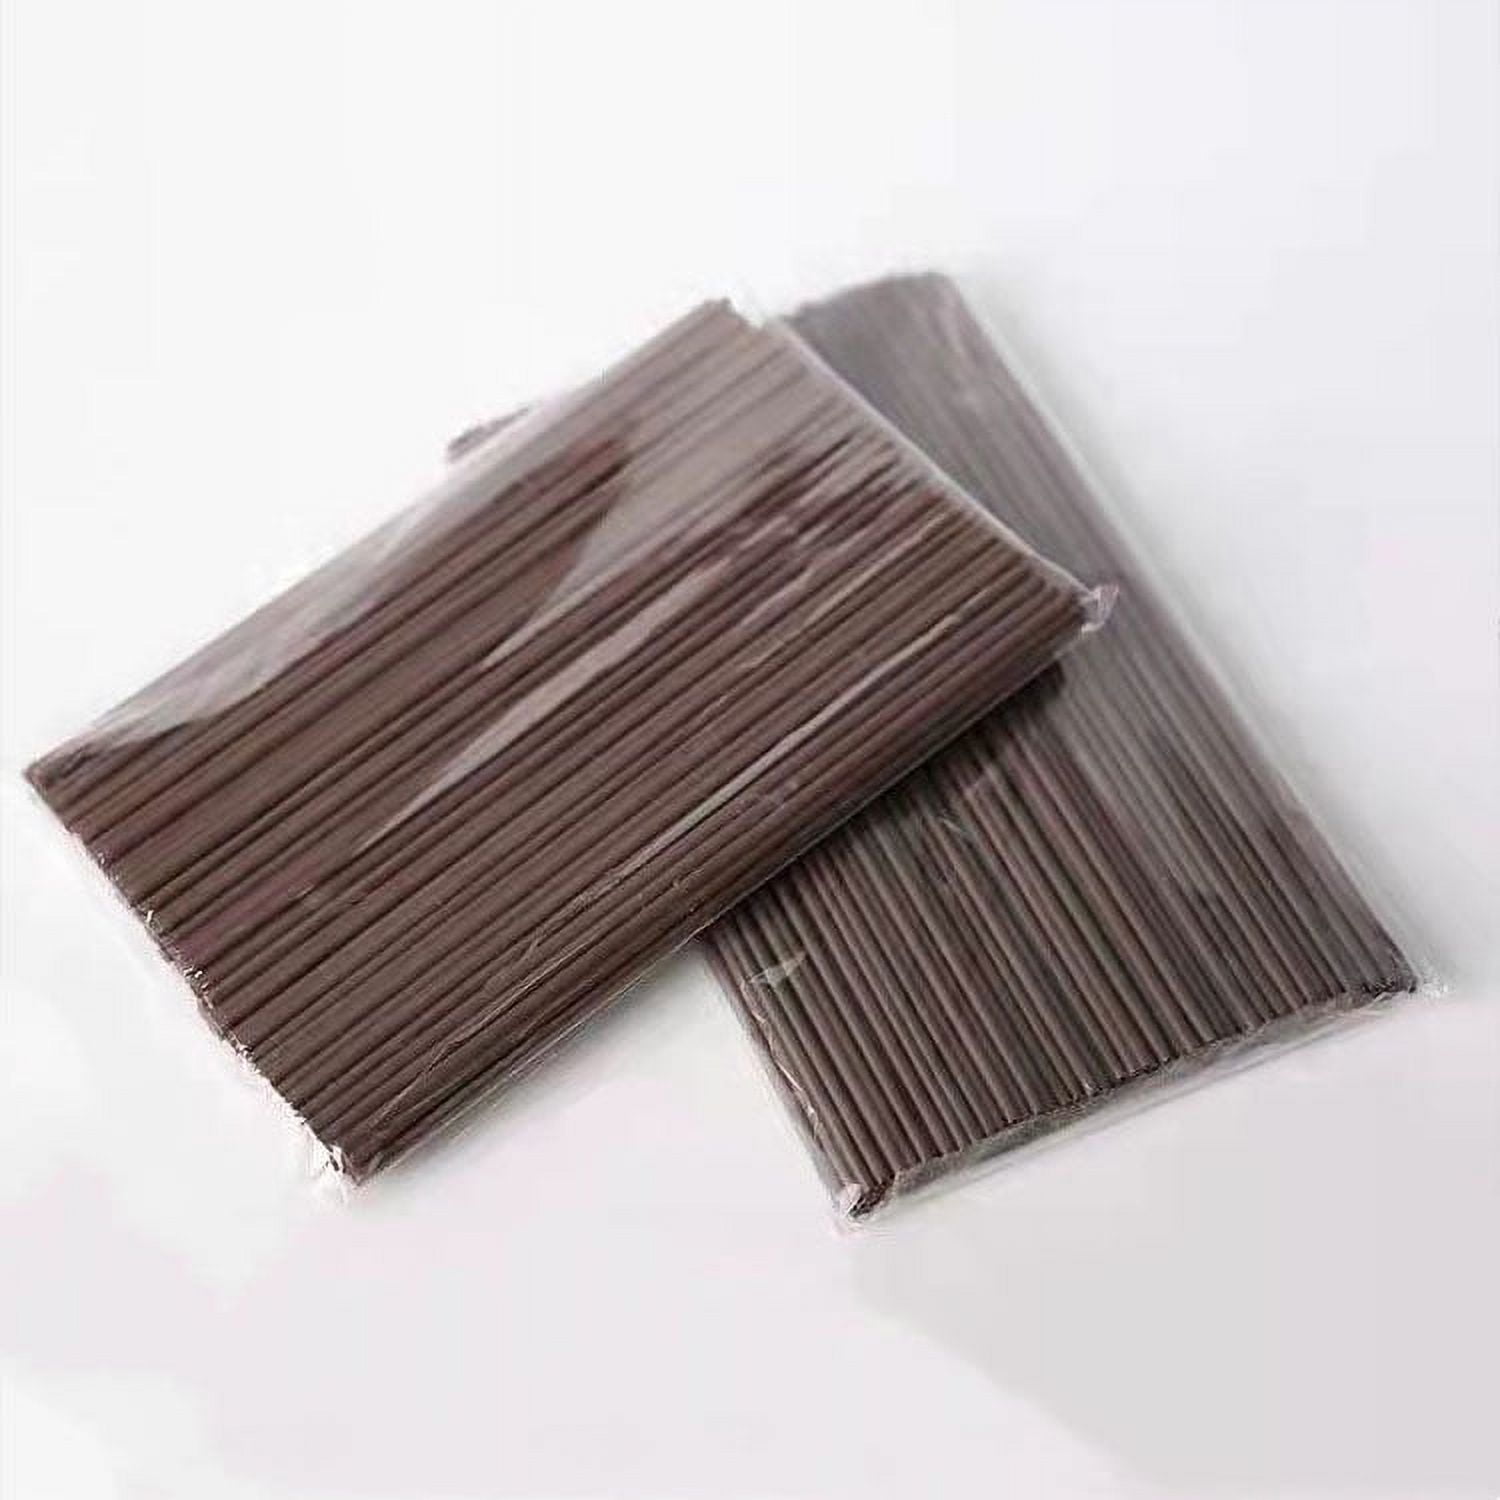 Plastic Stirrer Straws - 7 Inch Stir Straws Box by Rockline